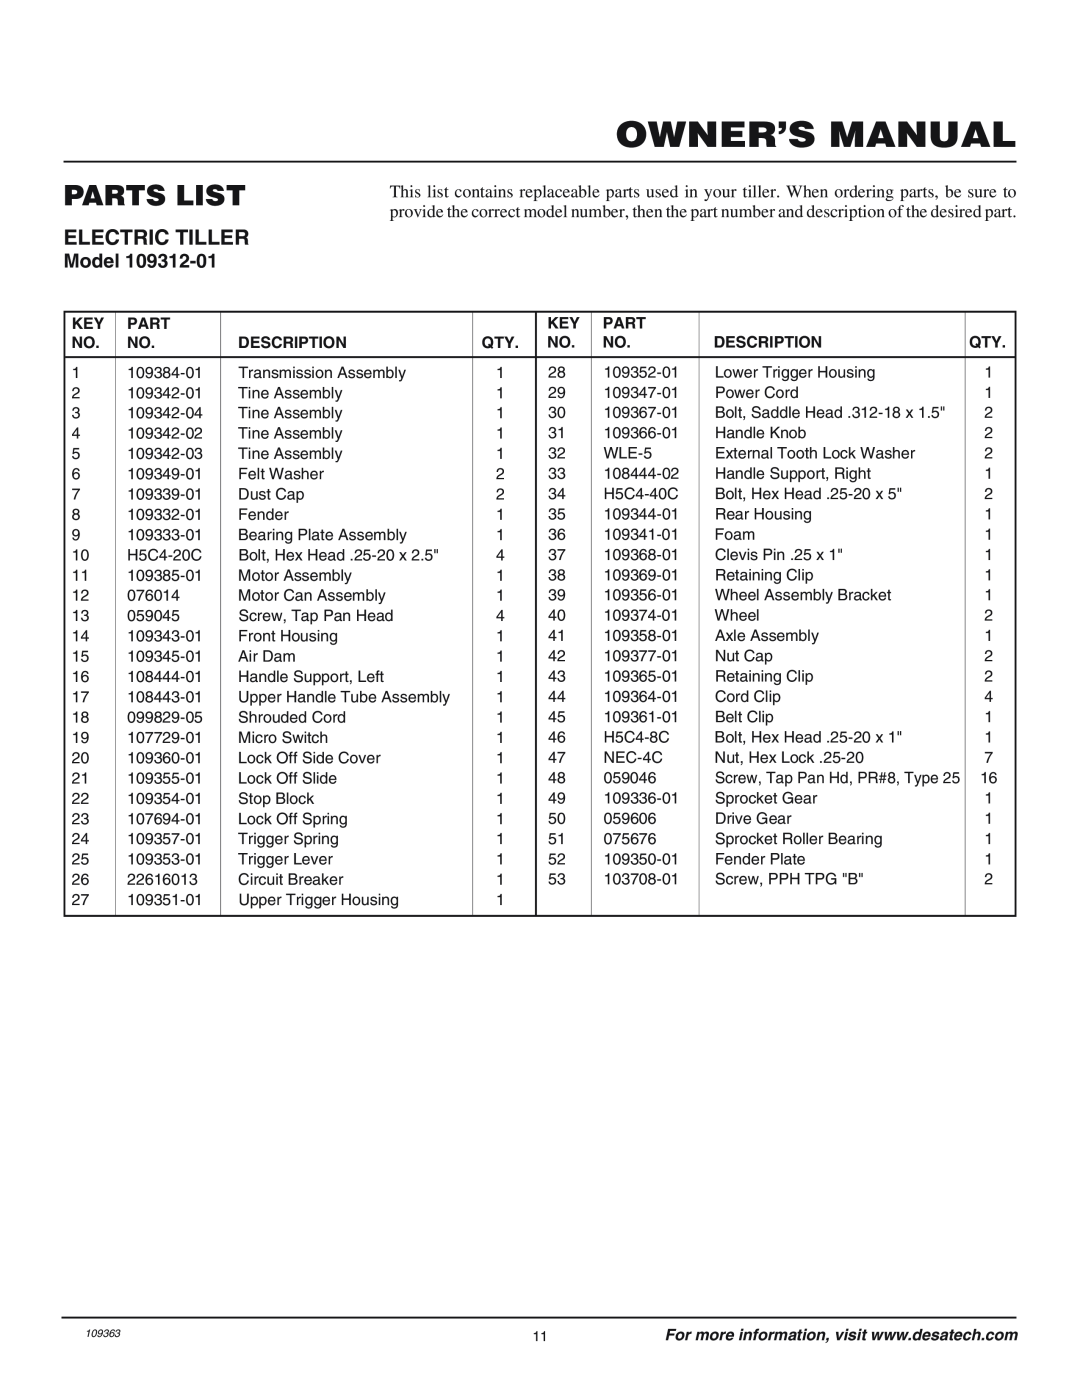 Remington 109312-01 owner manual Parts List, Owner’S Manual, Electric Tiller, Model 